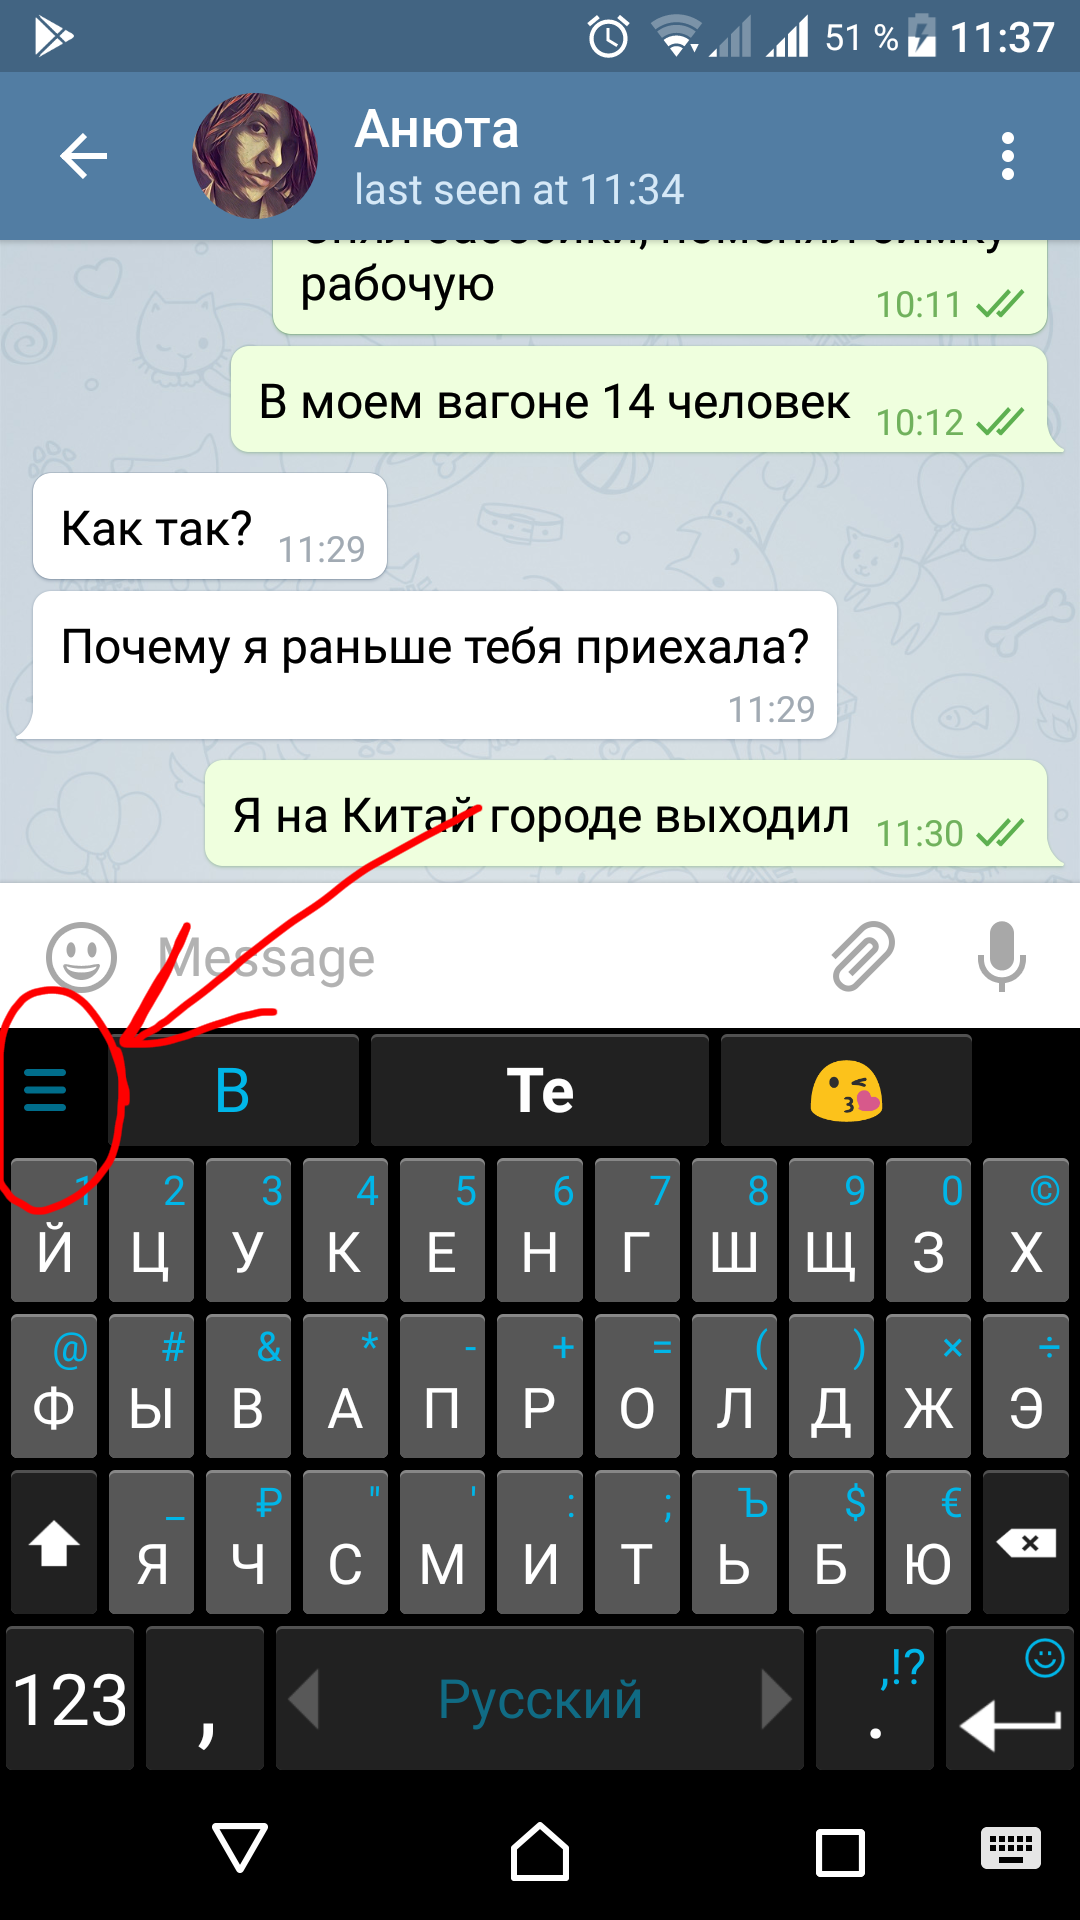 Телеграмм на английском как сделать русский язык фото 46